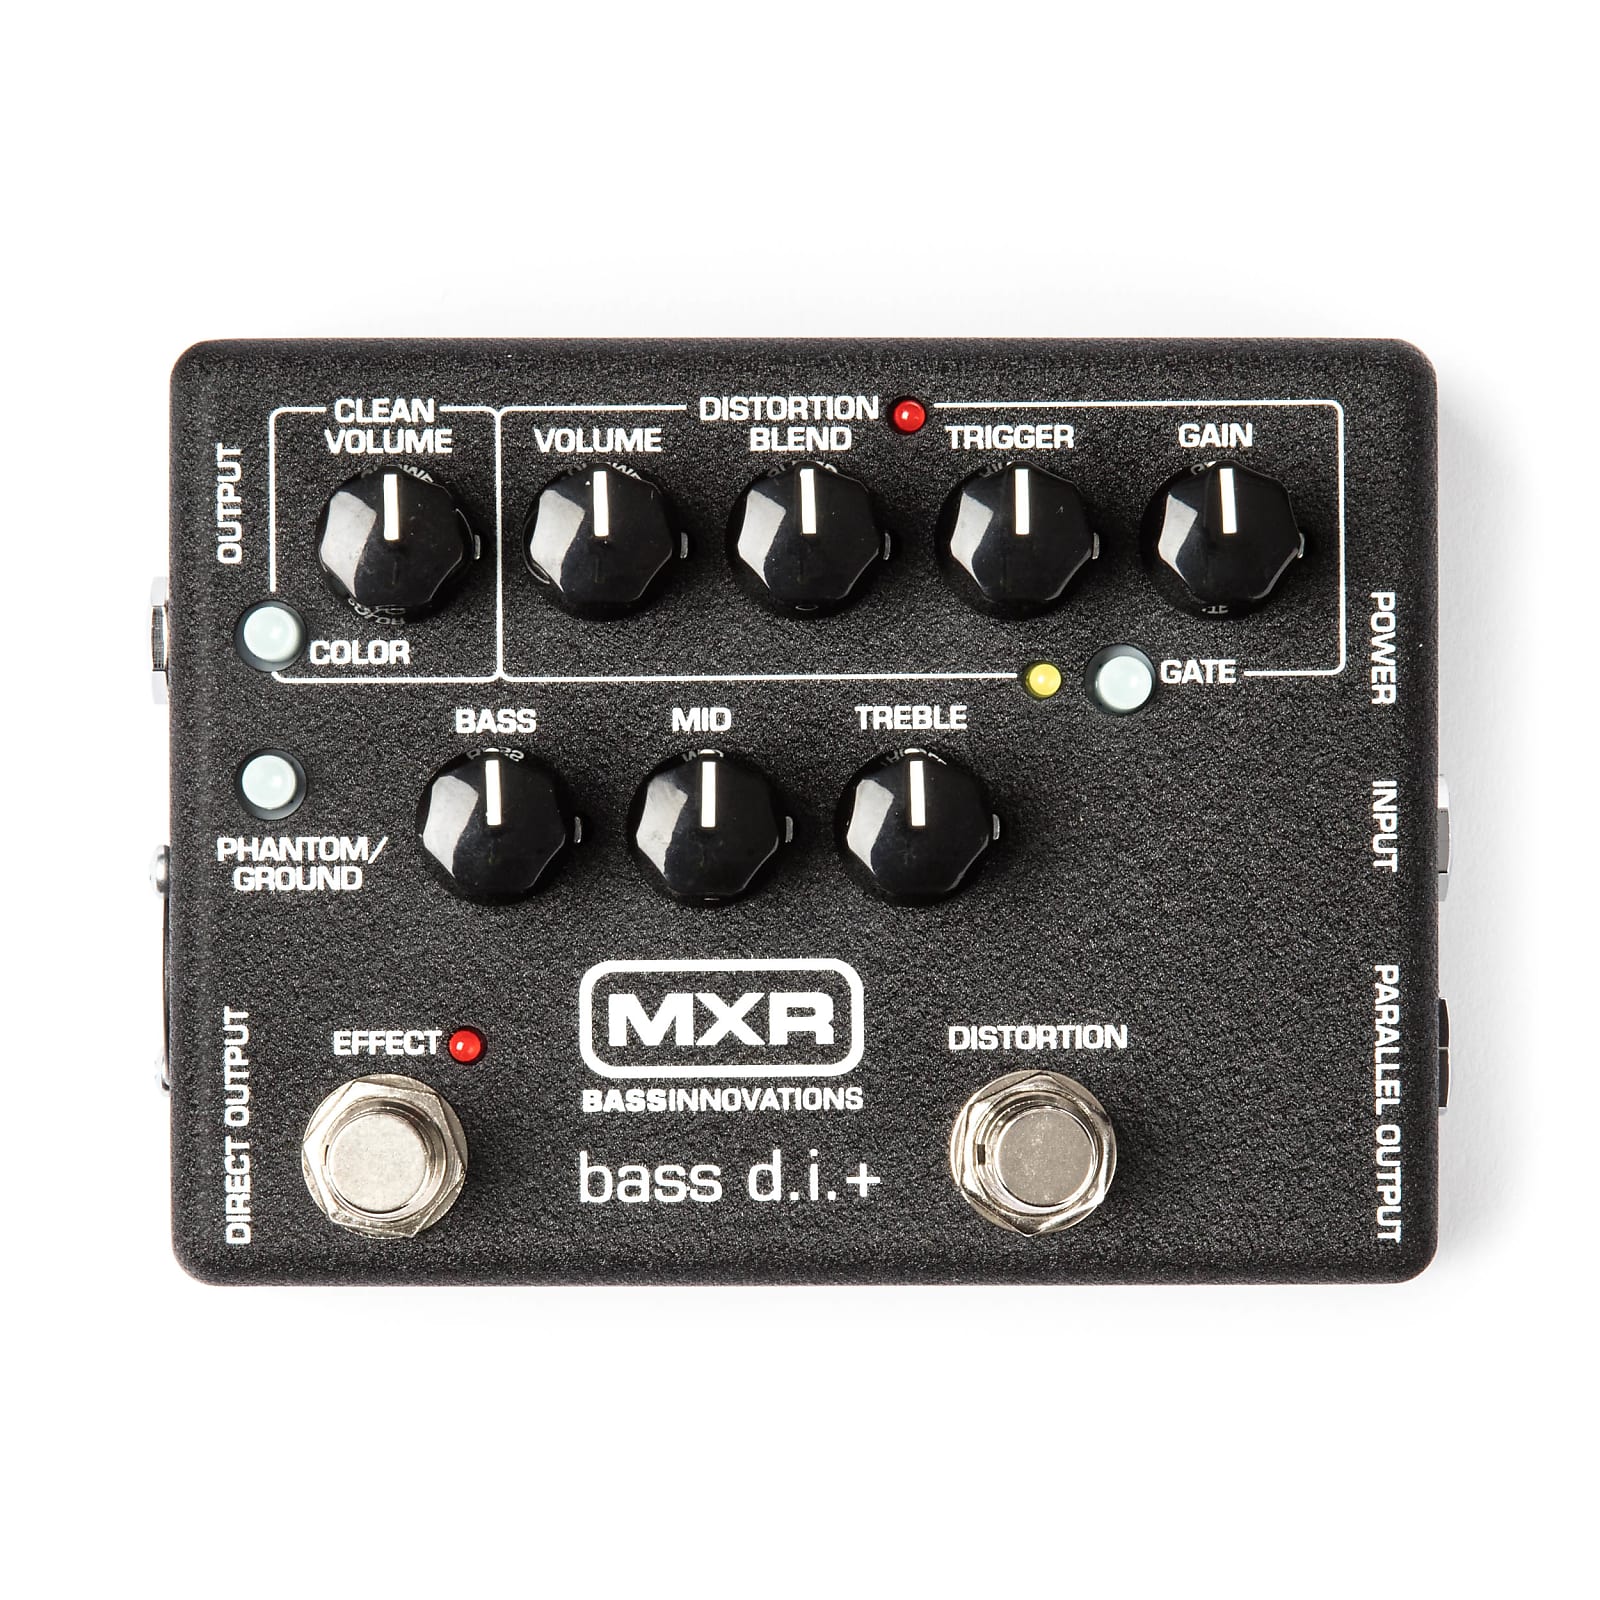 MXR M80 Bass D.I.+ Direct Box / Distortion Effects Pedal